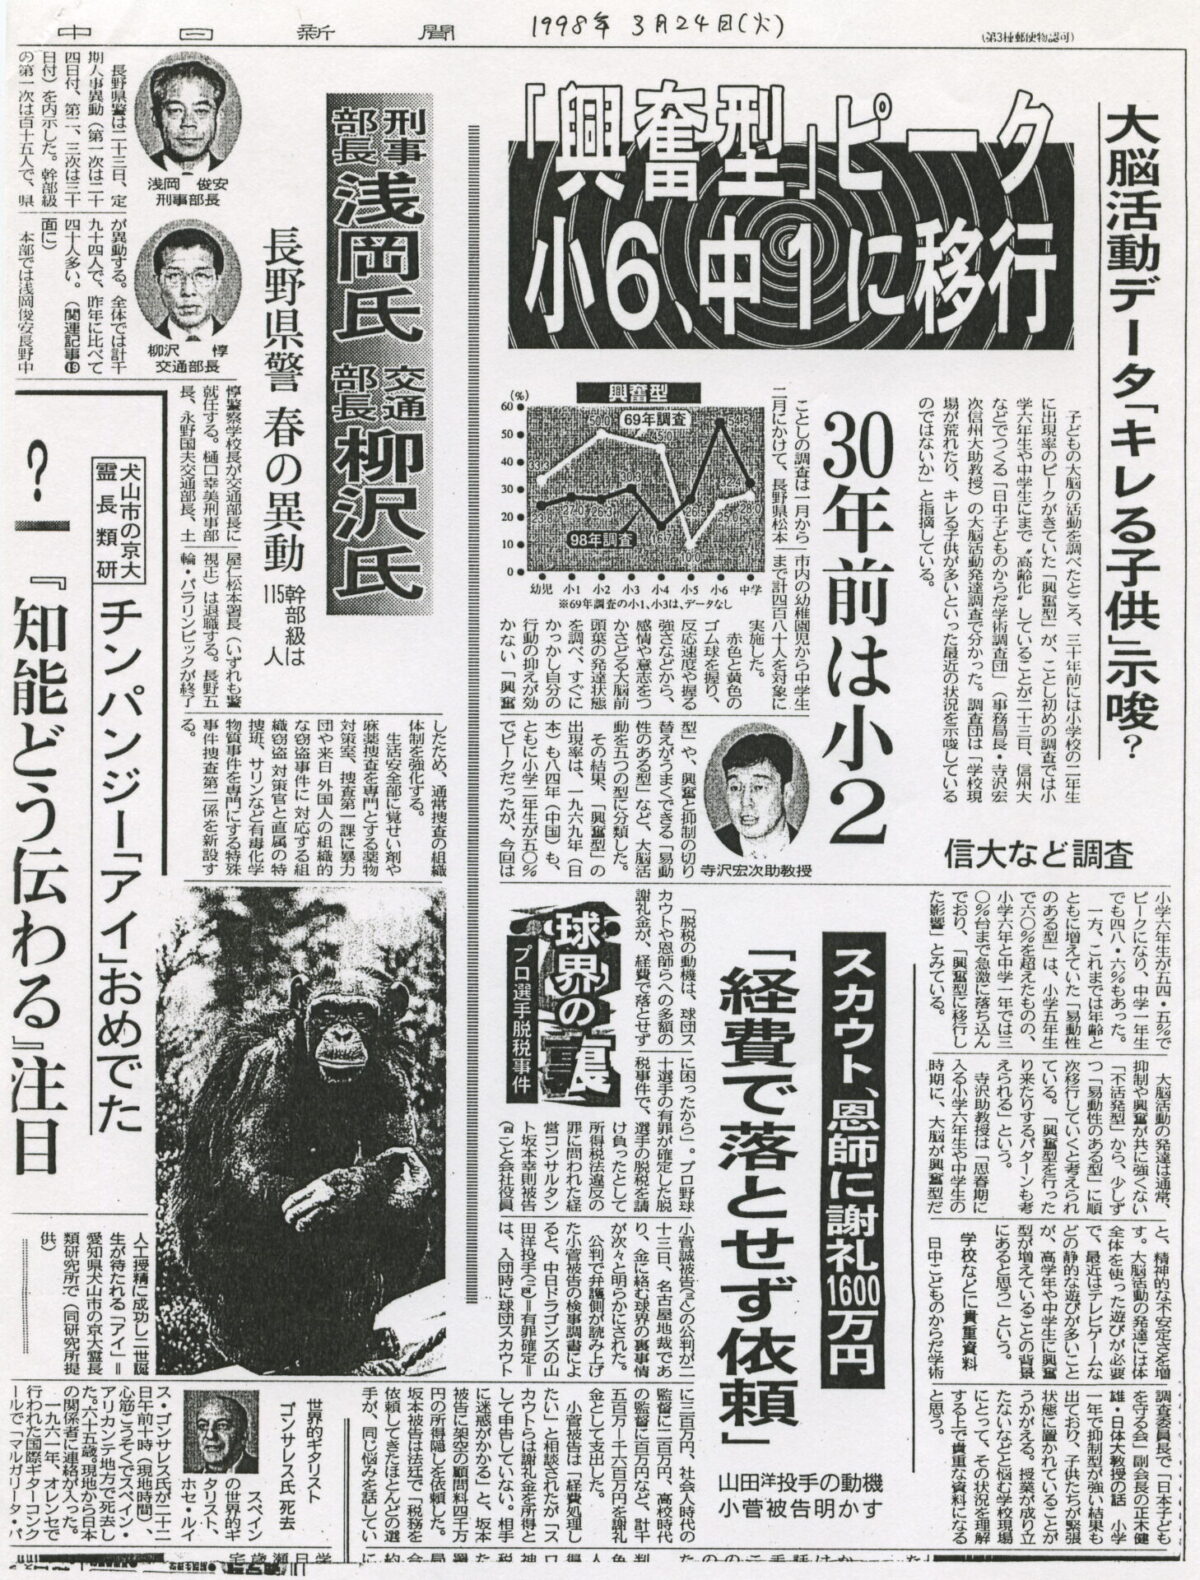 1998-03-24中日新聞